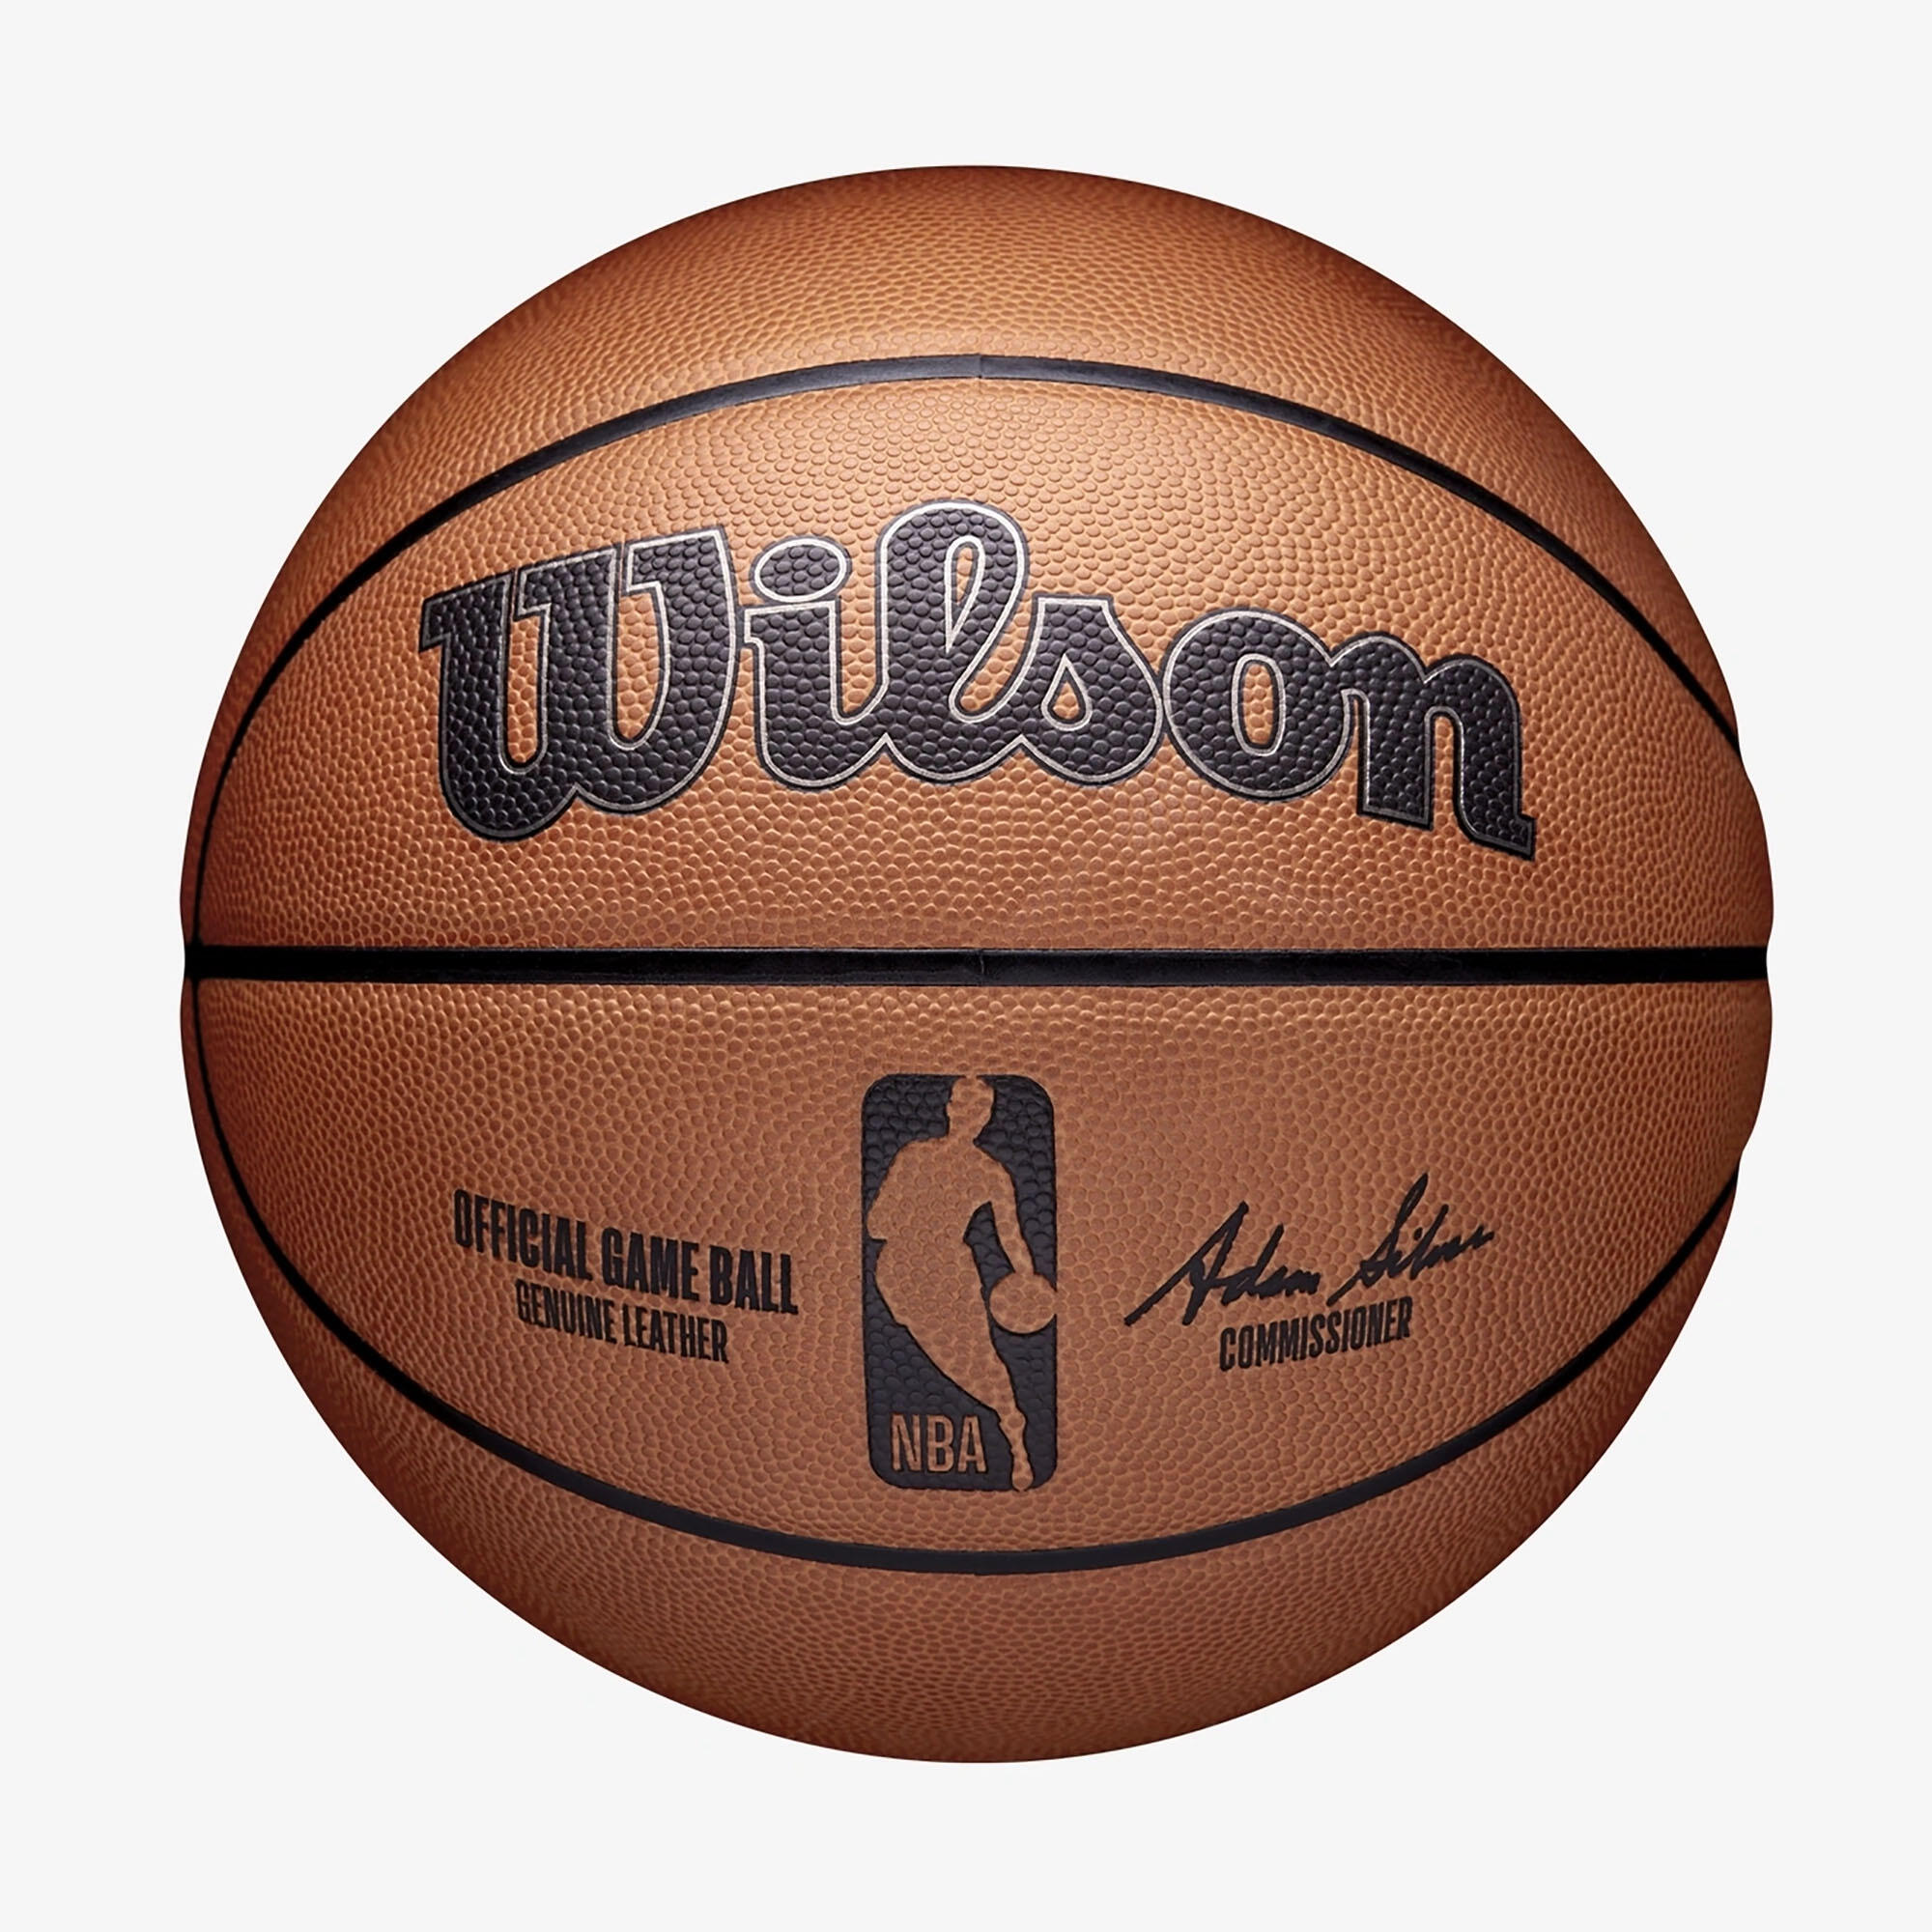 WILSON Ballon De Basketball Nba Taille 7 - Official Game Ball Marron